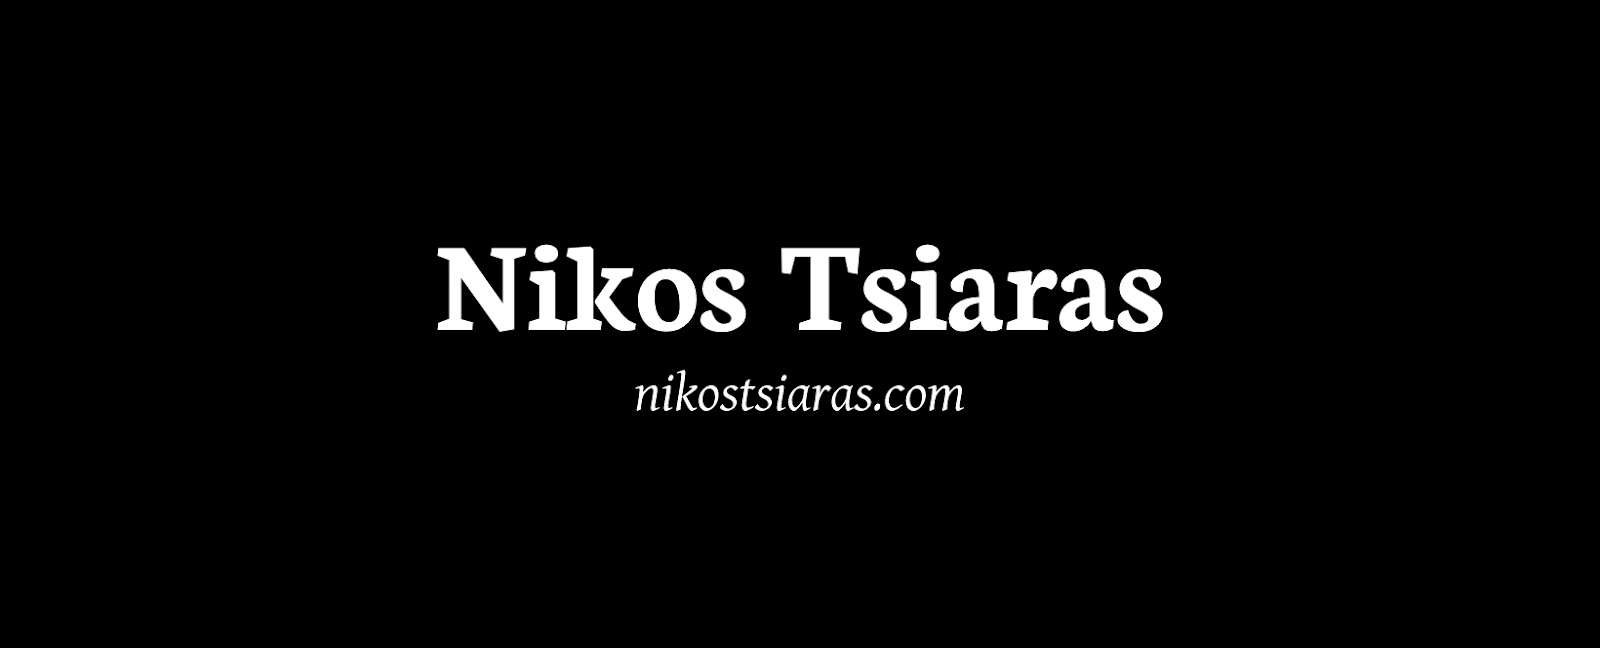 Nikos Tsiaras | Official Website